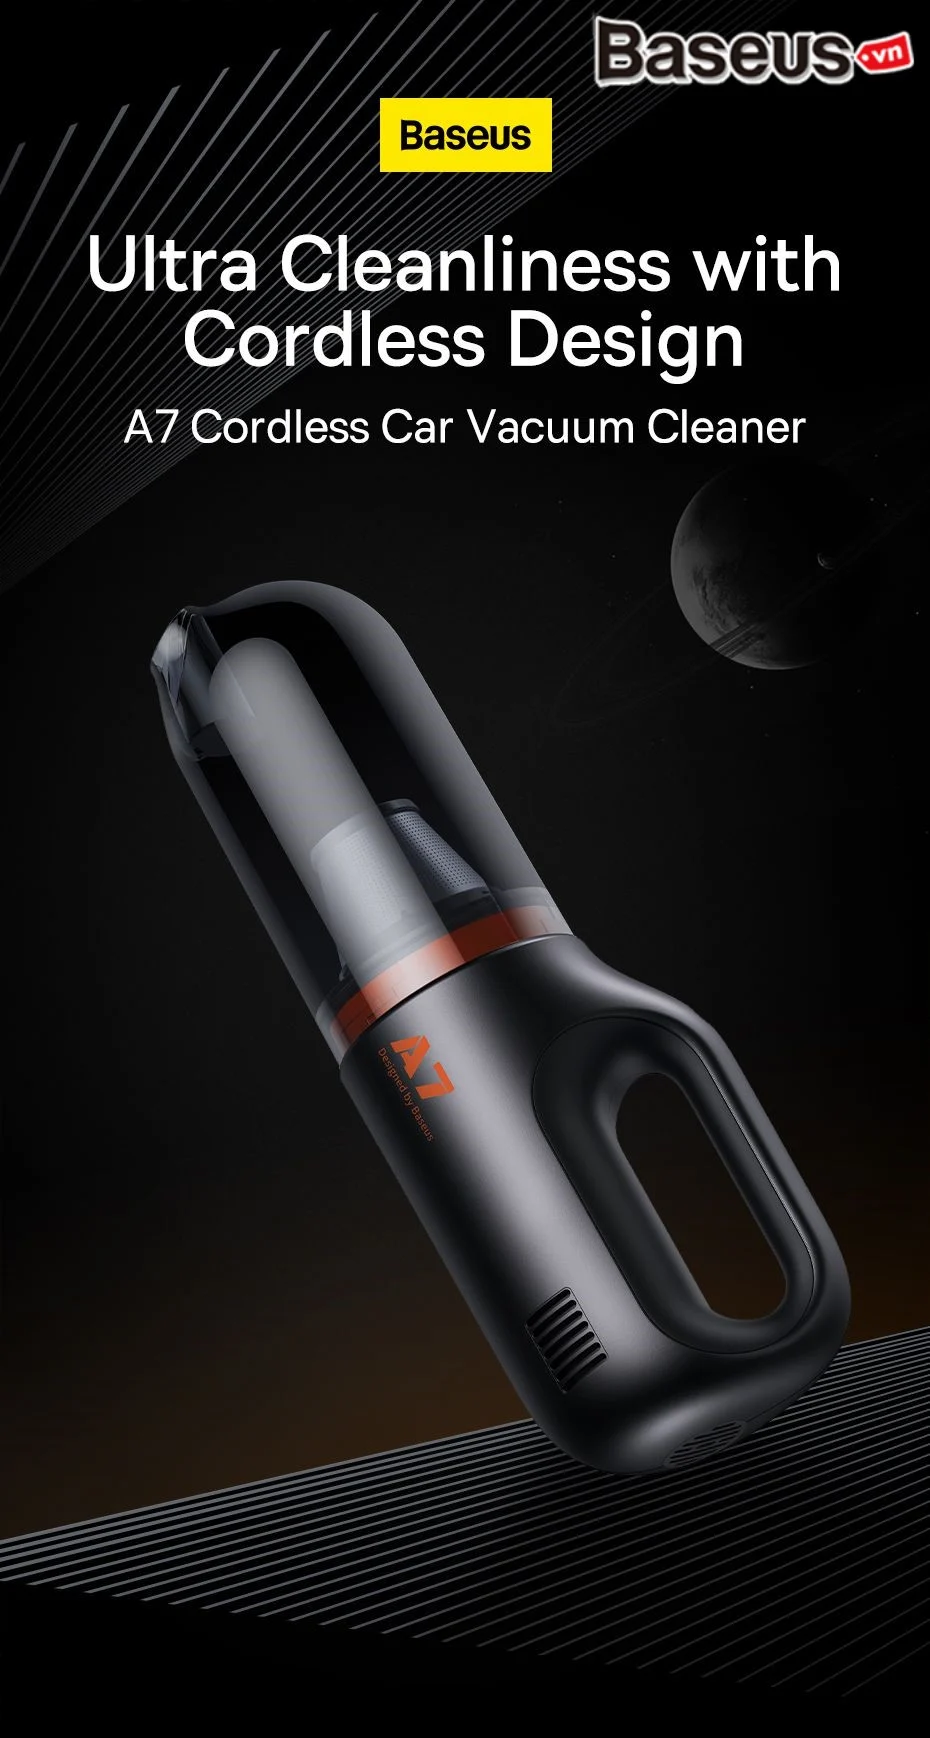 Máy Hút Bụi Cầm Tay Không Dây Baseus A7 Cordless Car Vacuum Cleaner 6000Pa